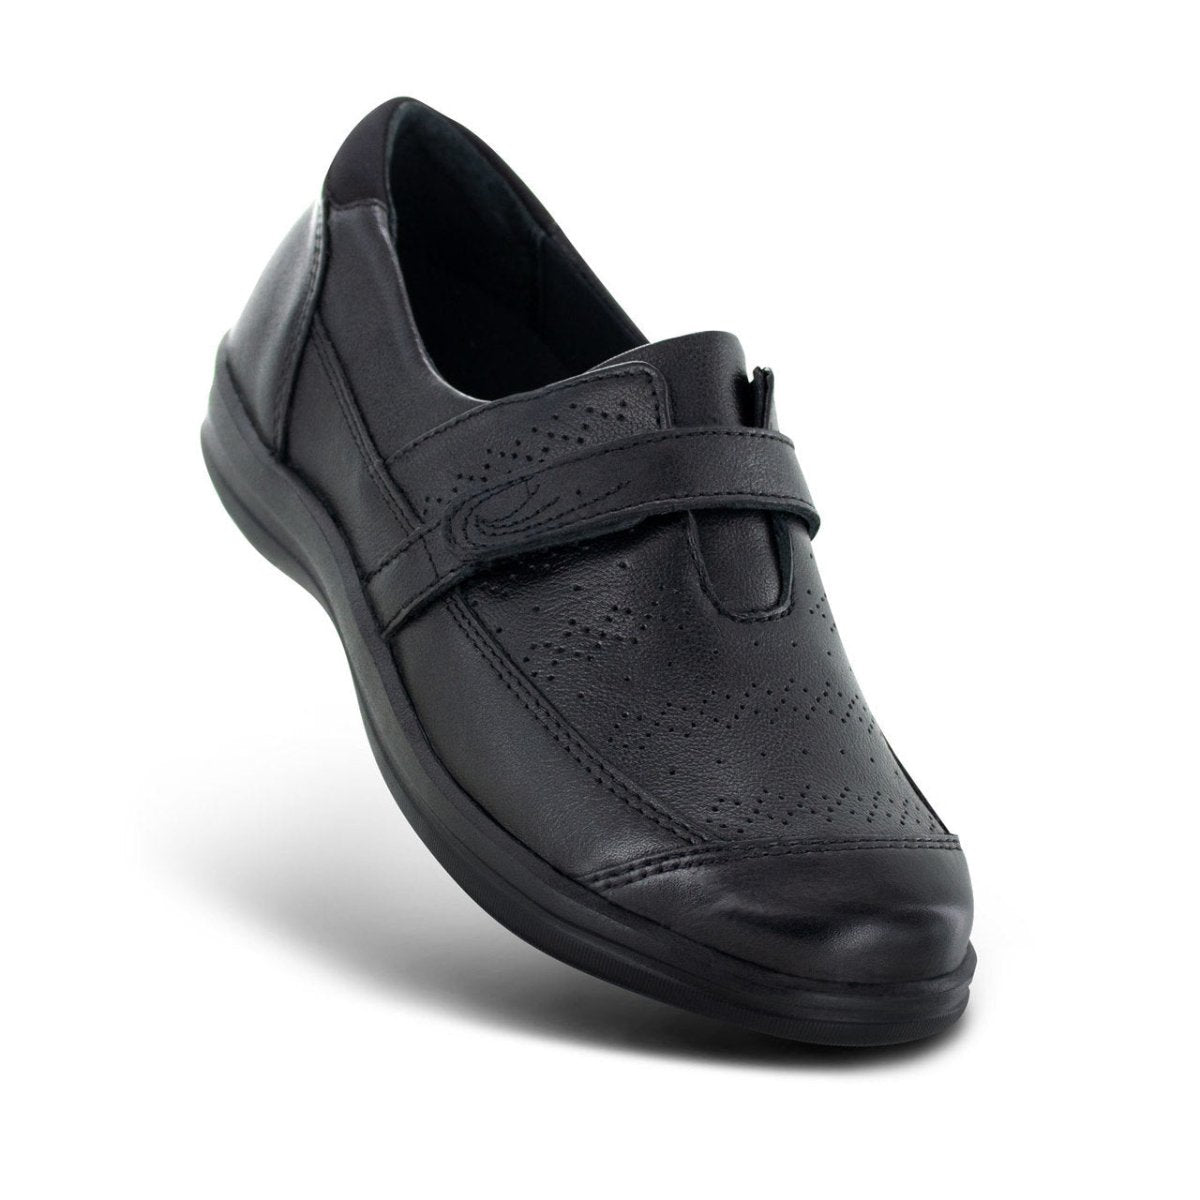 APEX REGINA SLIP ON WOMEN'S DRESS SHOE IN BLACK - TLW Shoes